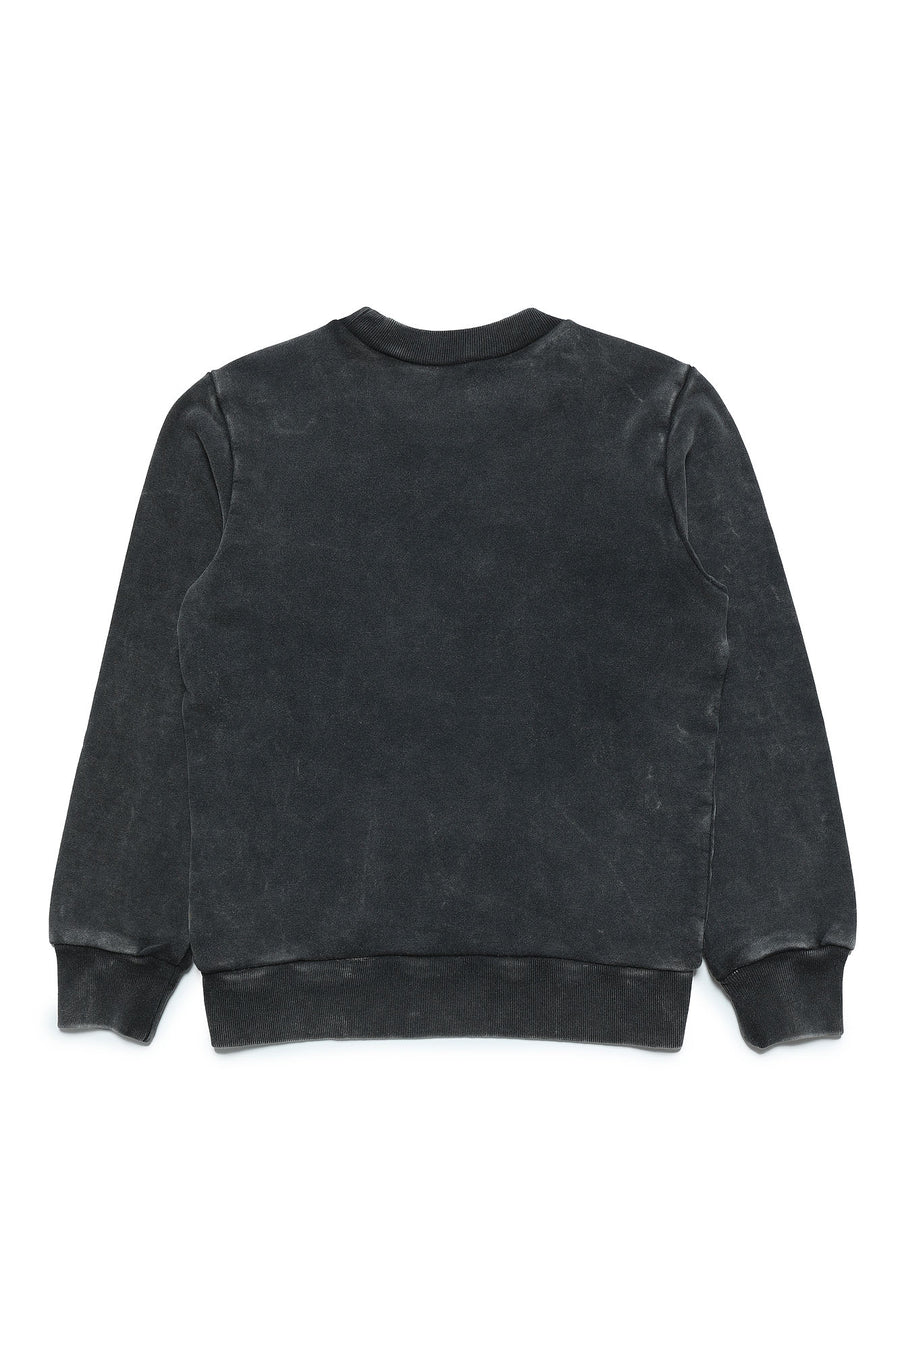 Washed Black Sweatshirt By N21